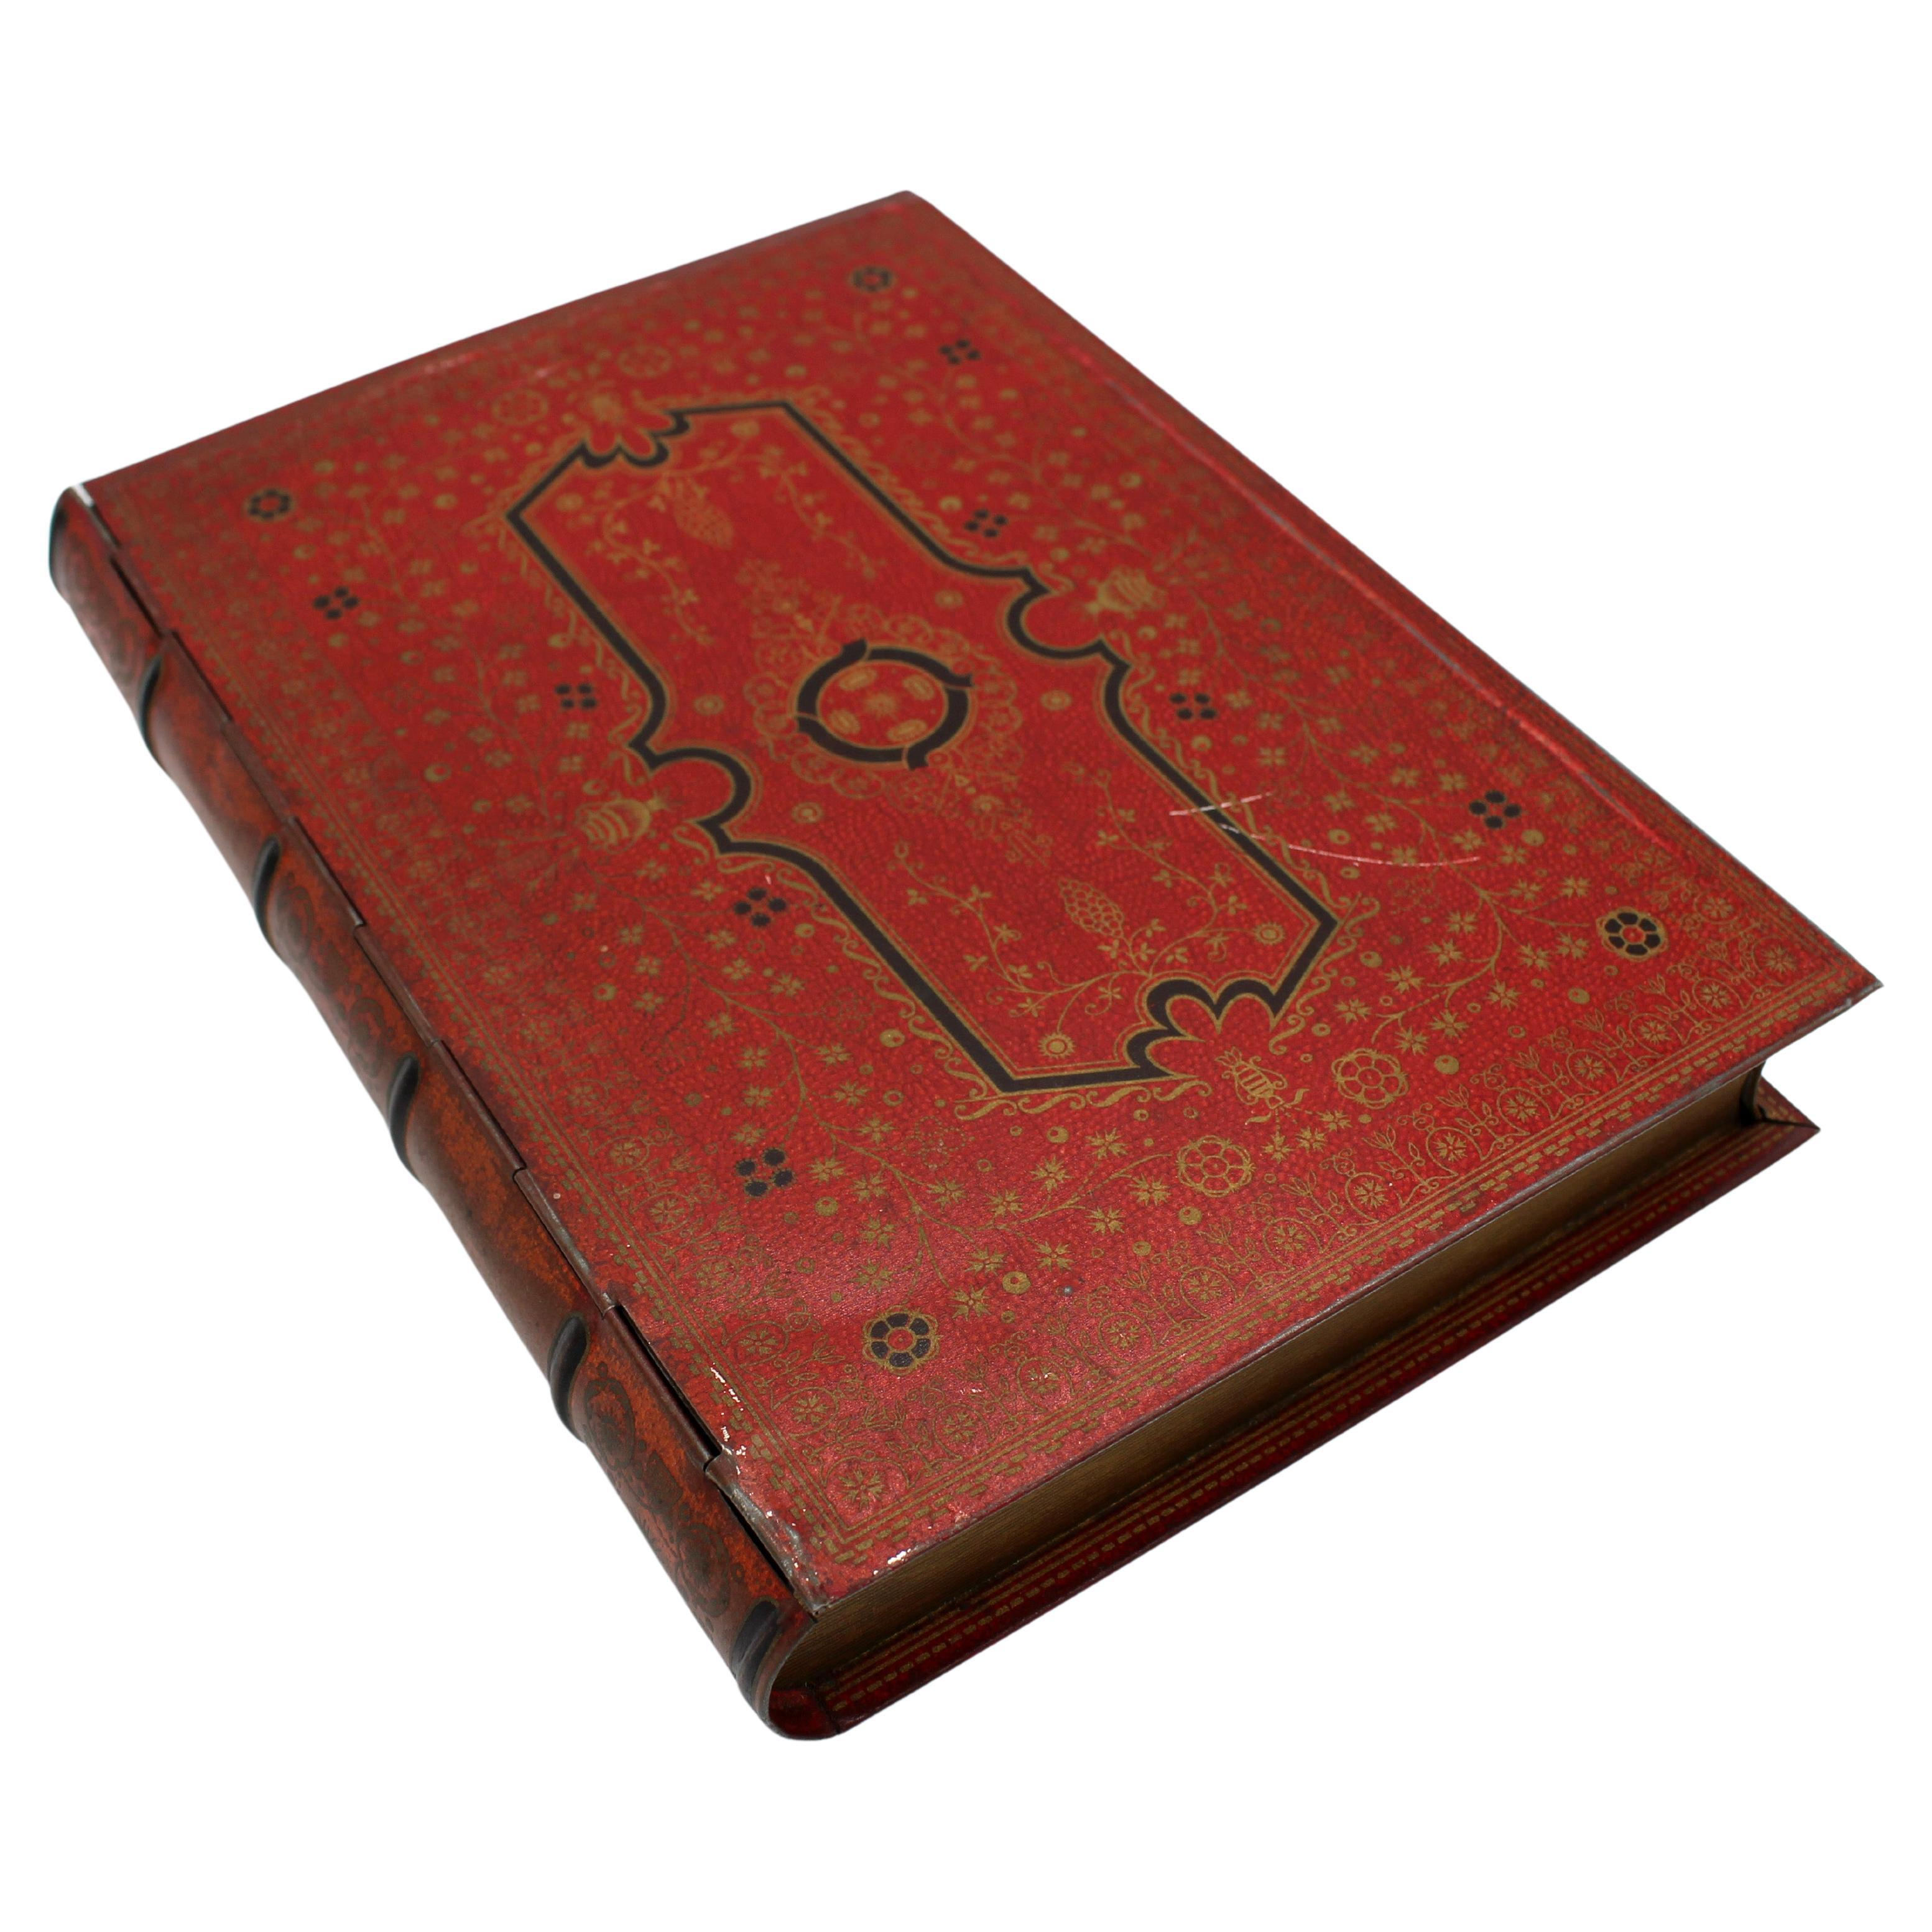 c. Boîte à biscuits Scarlet Book Form A des années 1930-40 par Huntley & Palmers